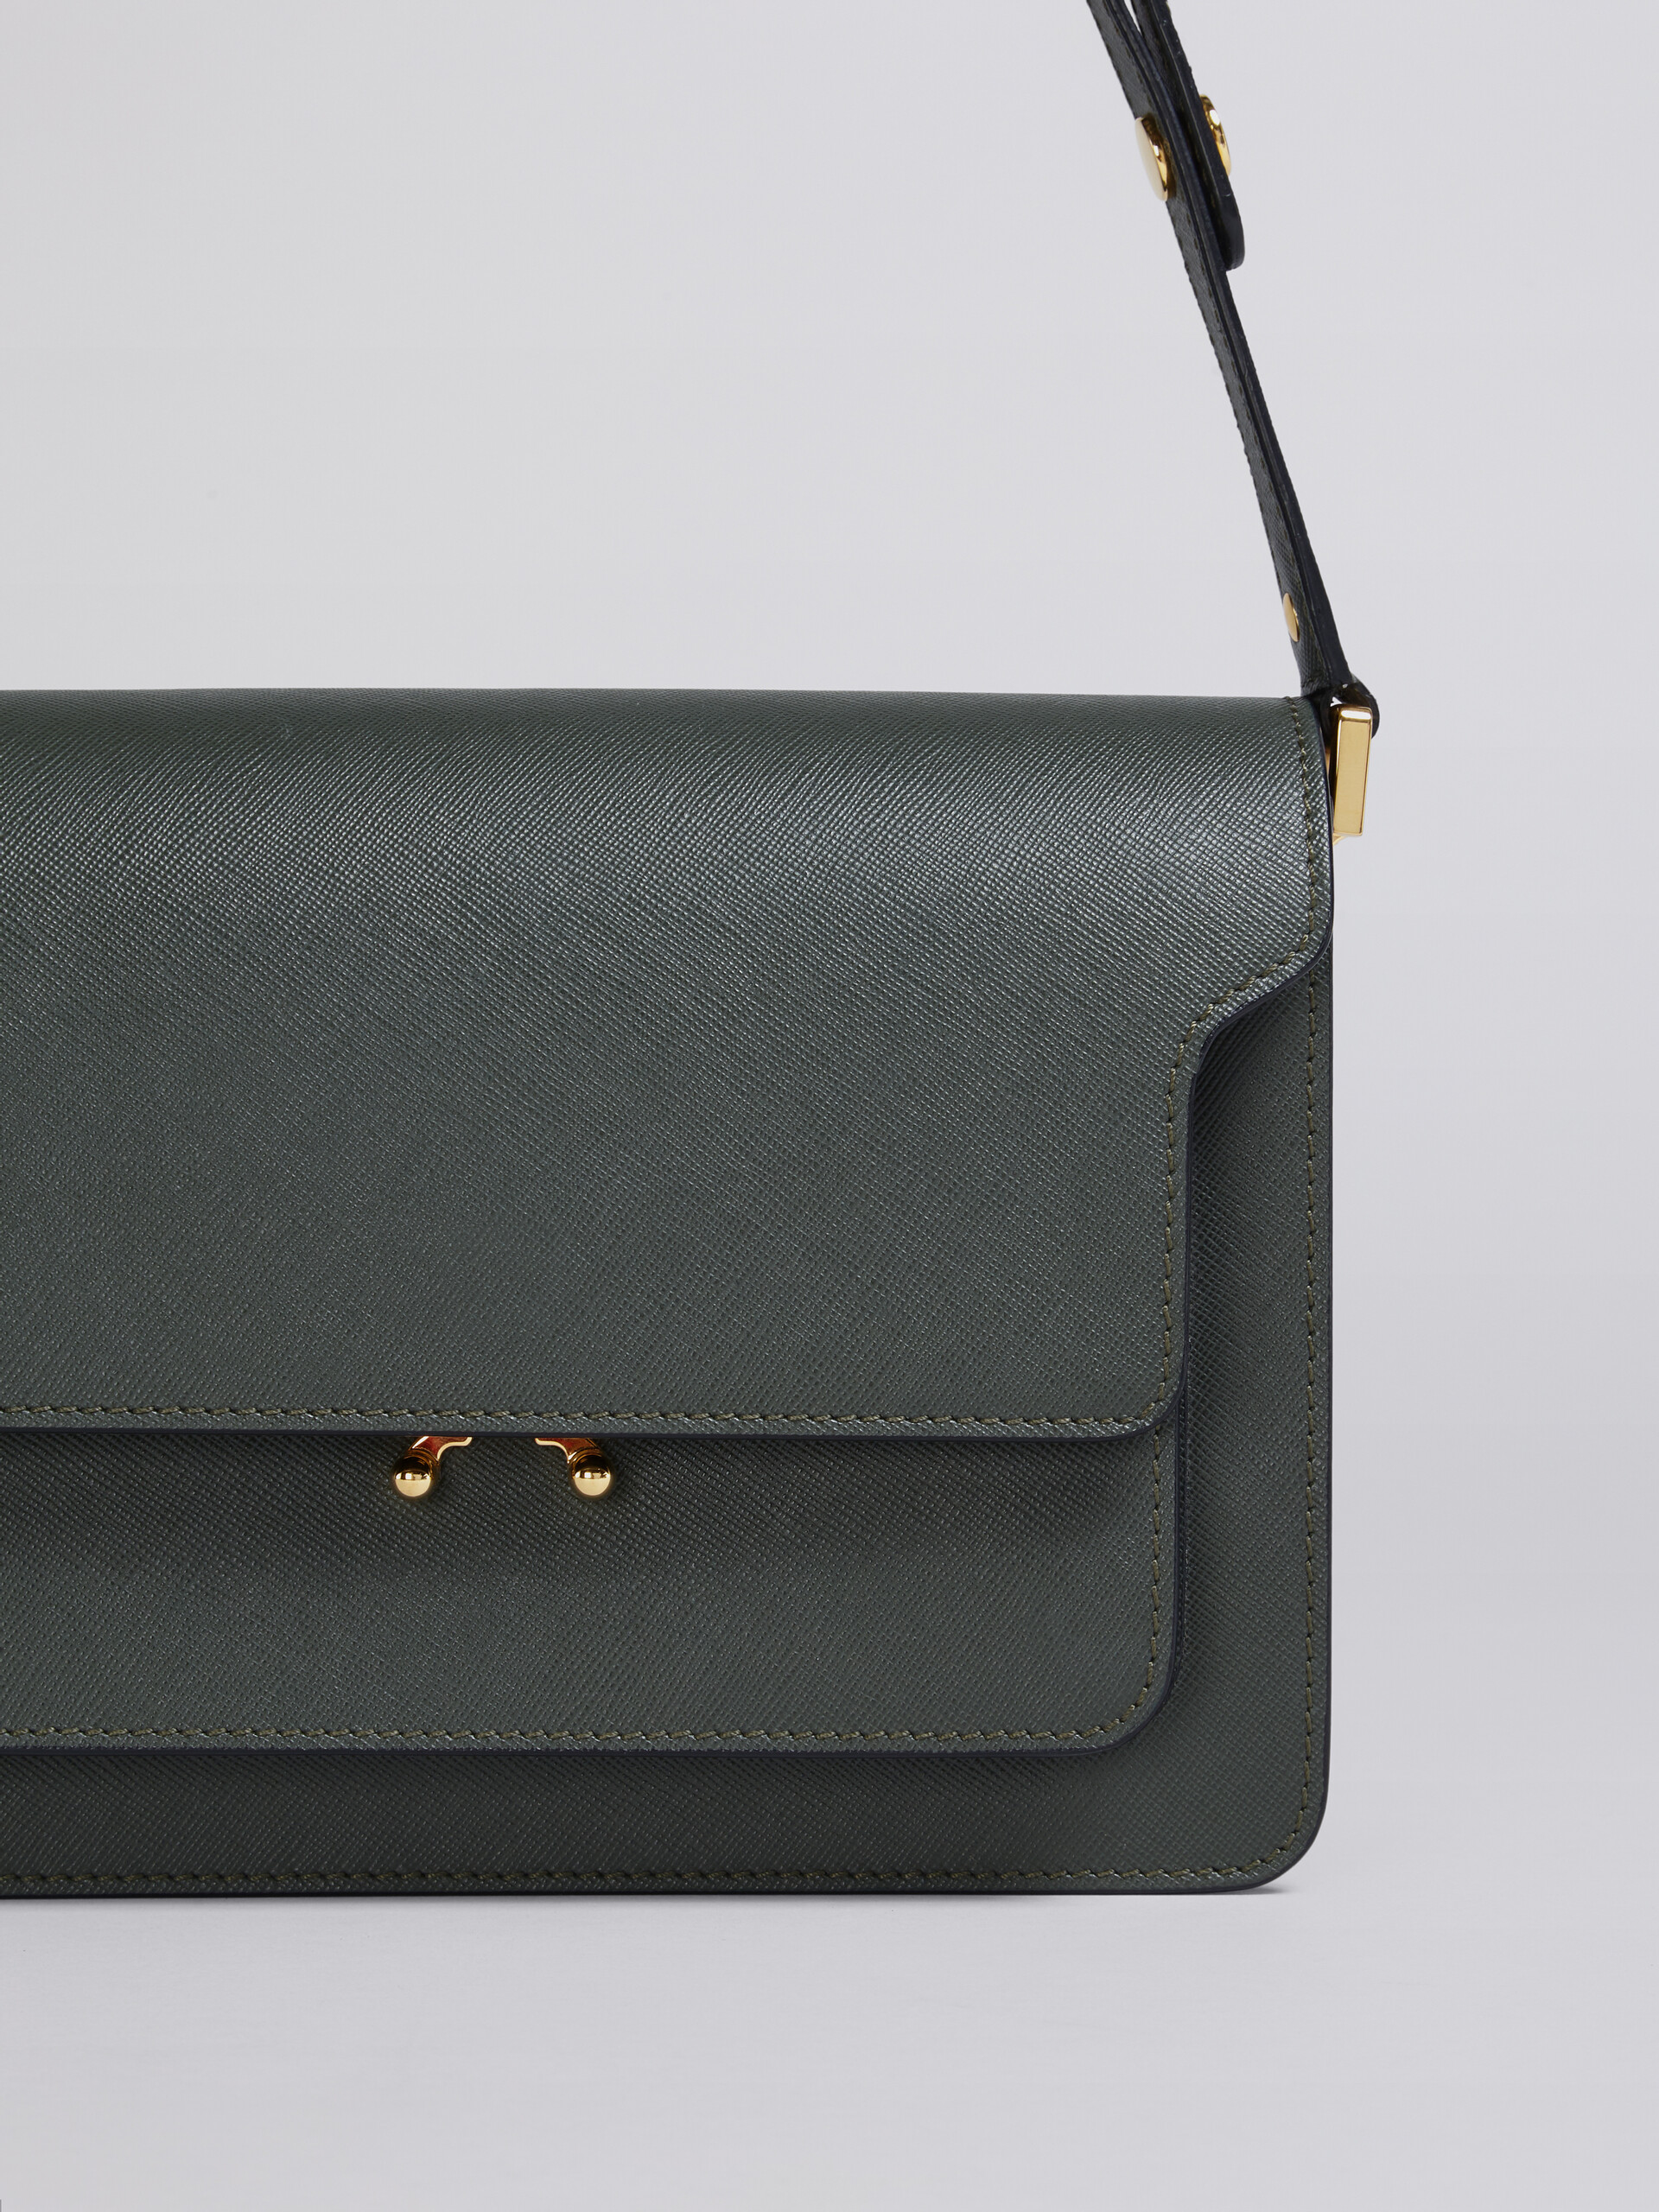 TRUNK medium bag in grey saffiano leather - Shoulder Bag - Image 4